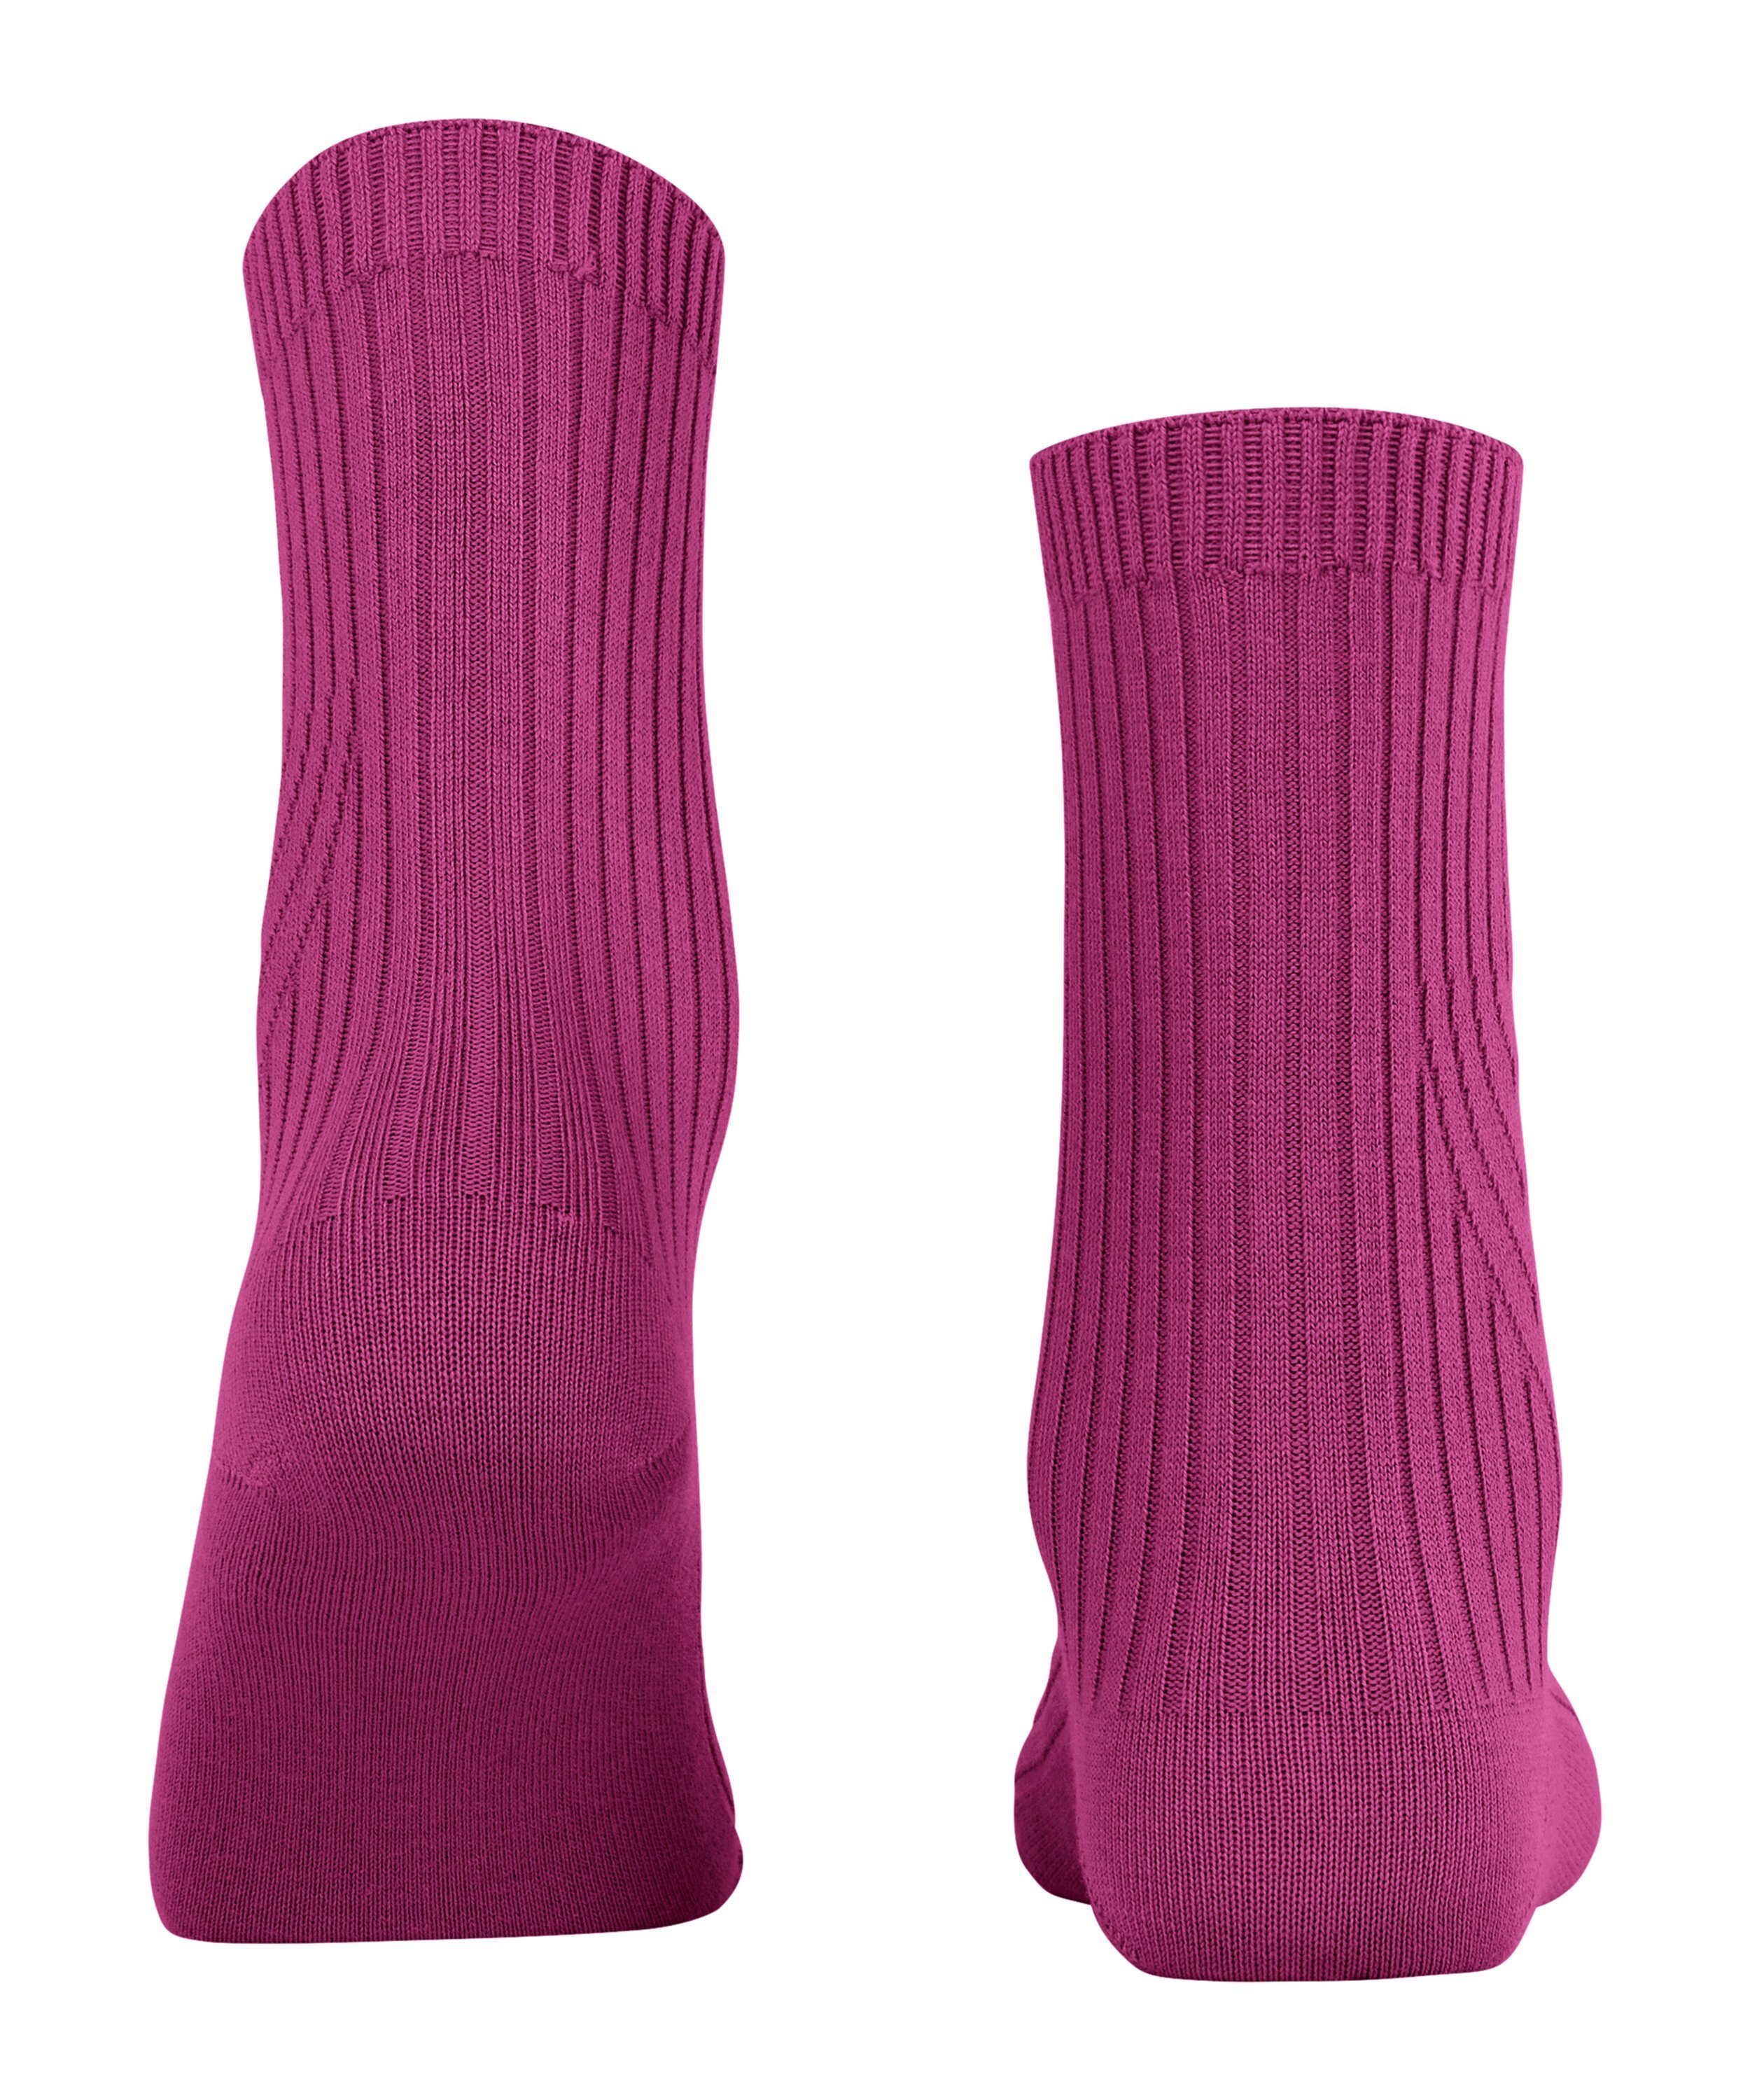 FALKE Socken Cross Knit (1-Paar) (8409) orchid pink